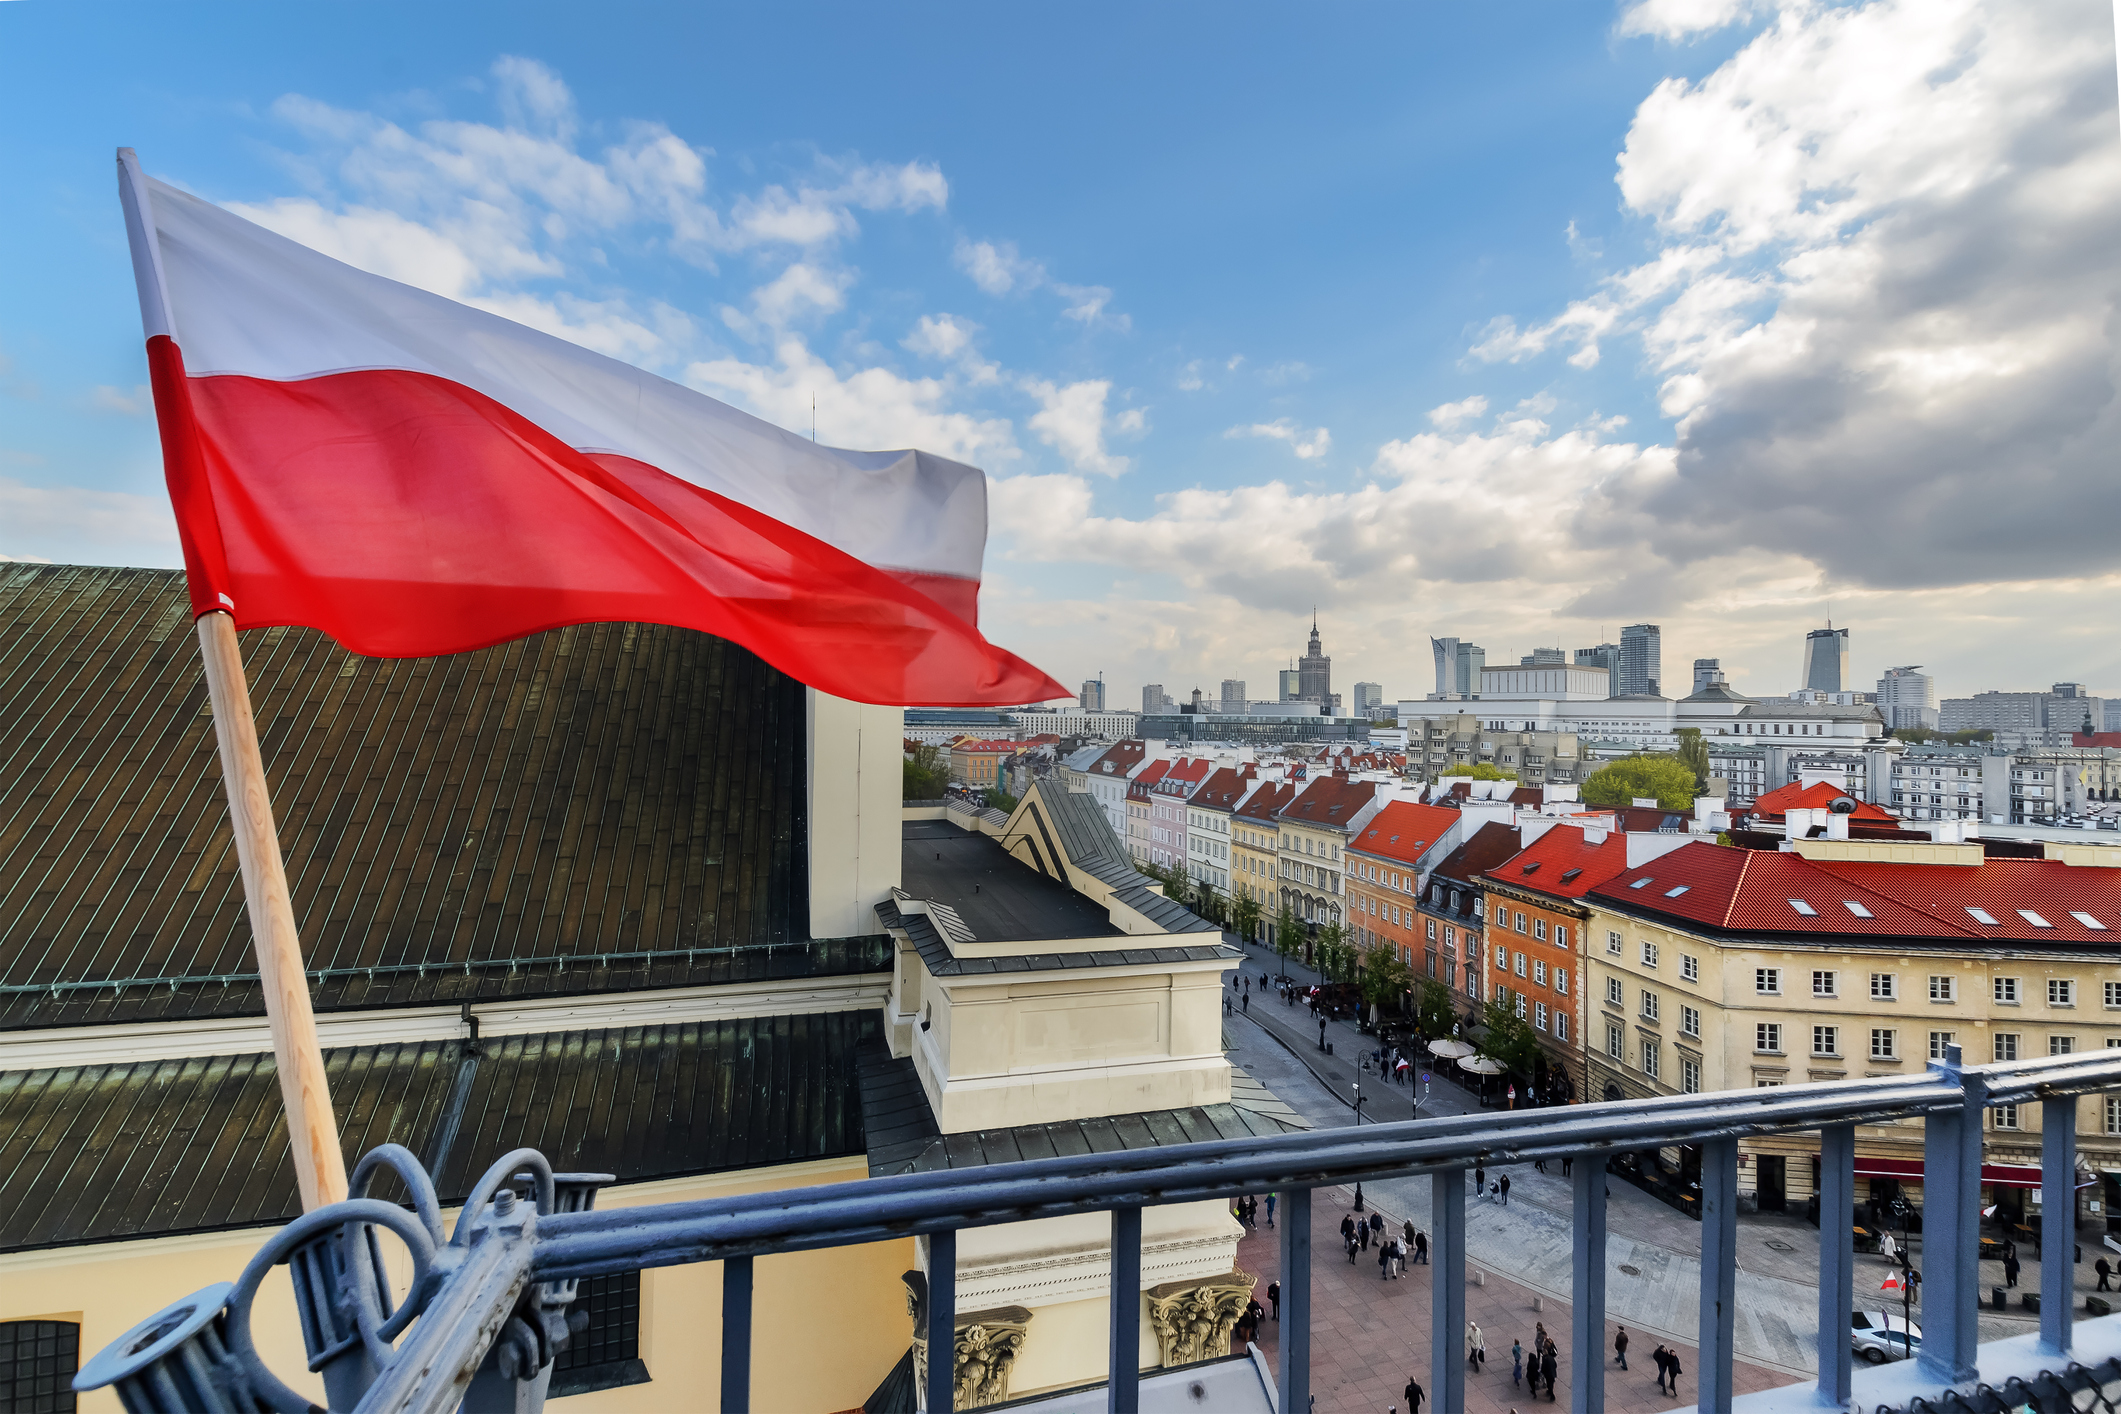 TRIGO opens its subsidiaries in POLAND